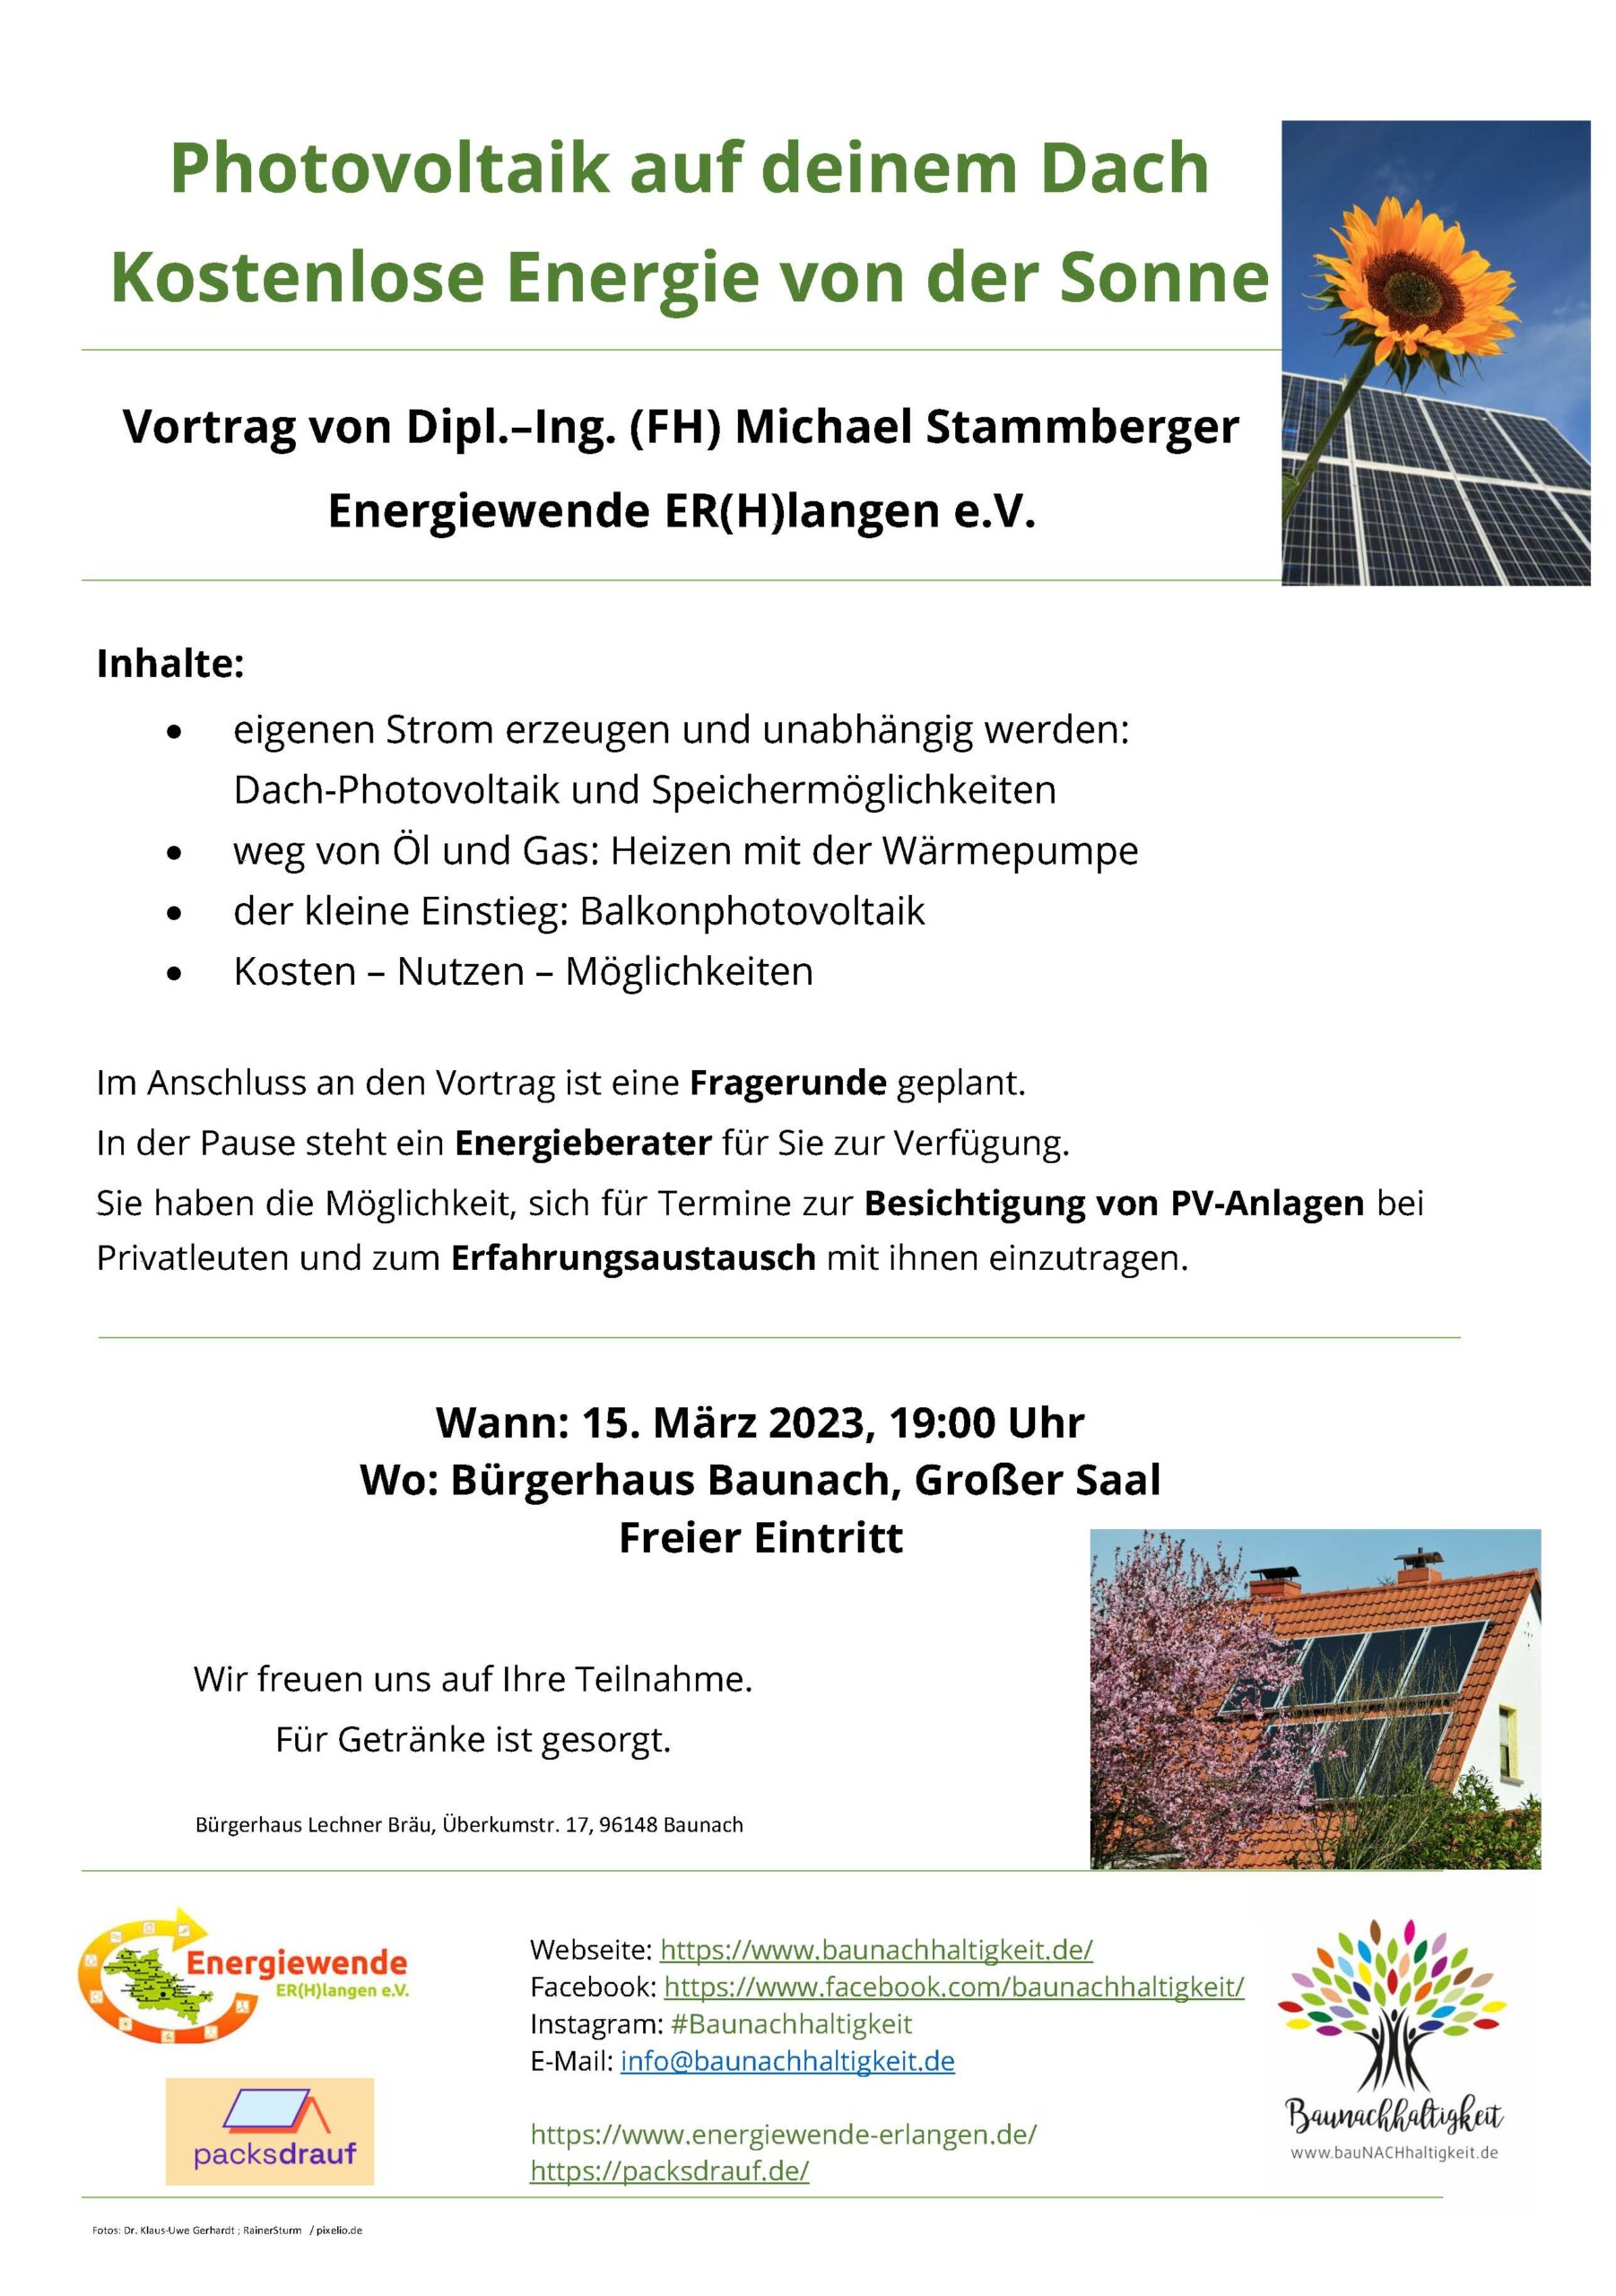 Veranstaltung: Photovoltaik auf deinem Dach (AG BauNACHhaltigkeit)